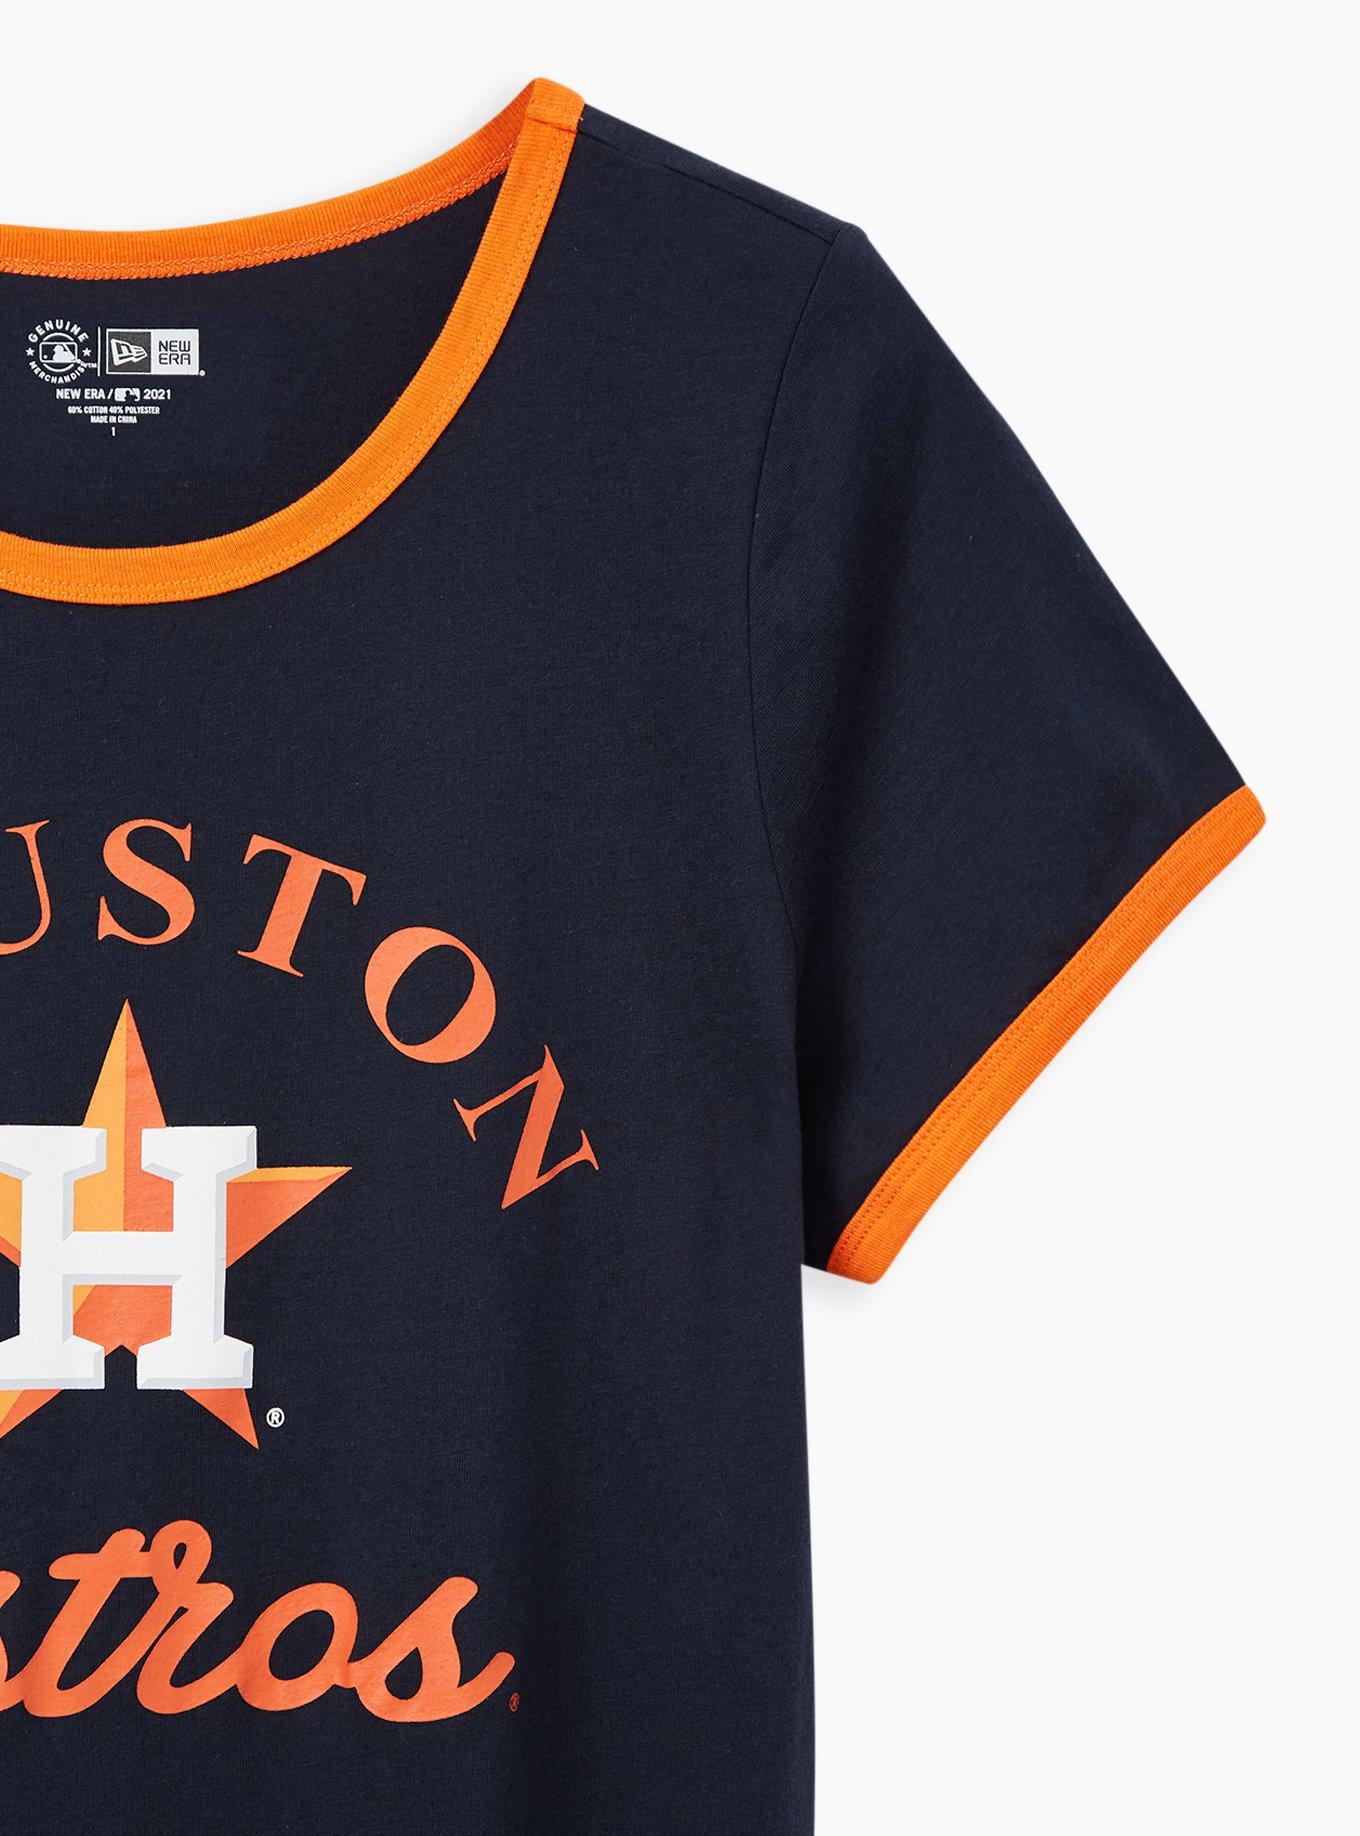 Houston Astros New Era T-Shirts, Astros Tees, Shirts